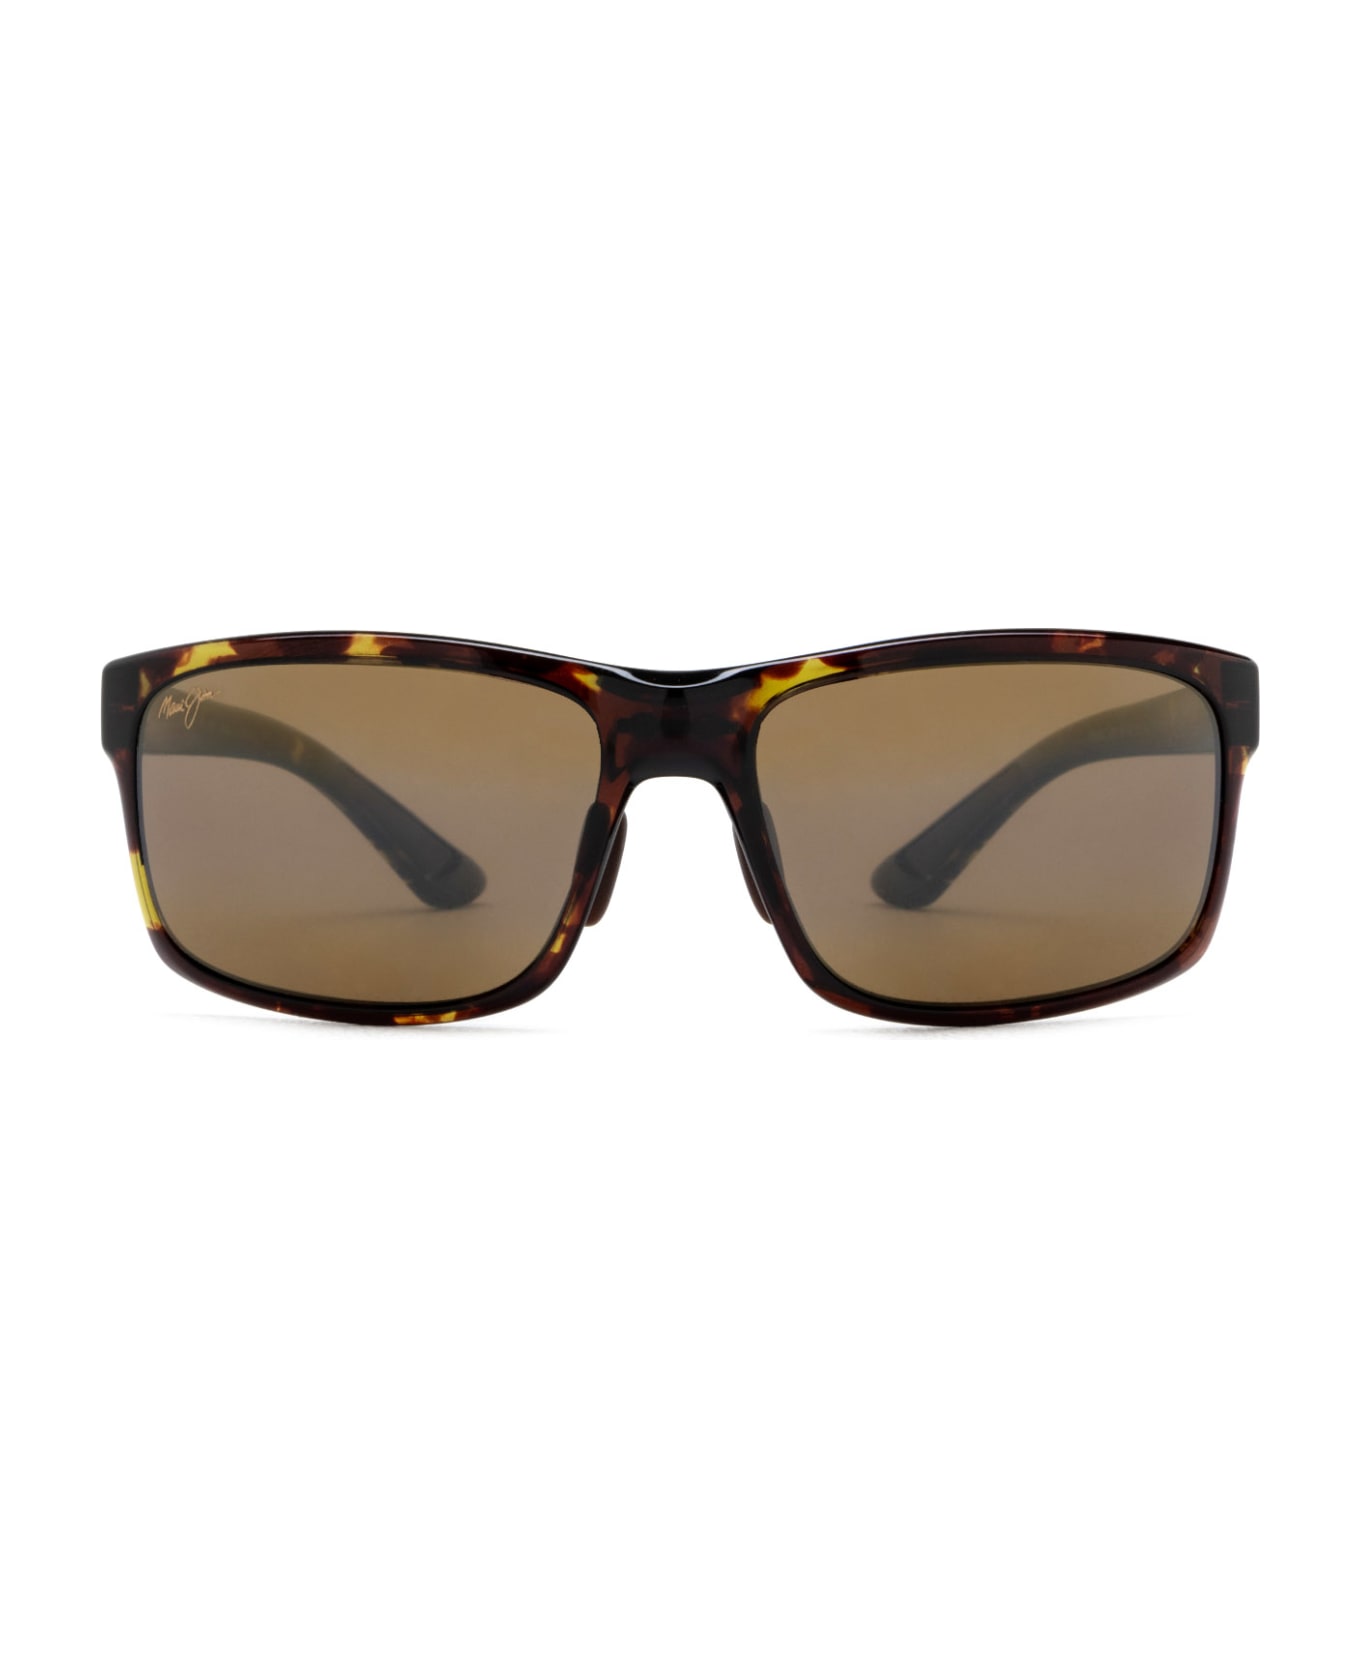 Maui Jim Mj439 Olive Tortoise Sunglasses - Olive Tortoise サングラス